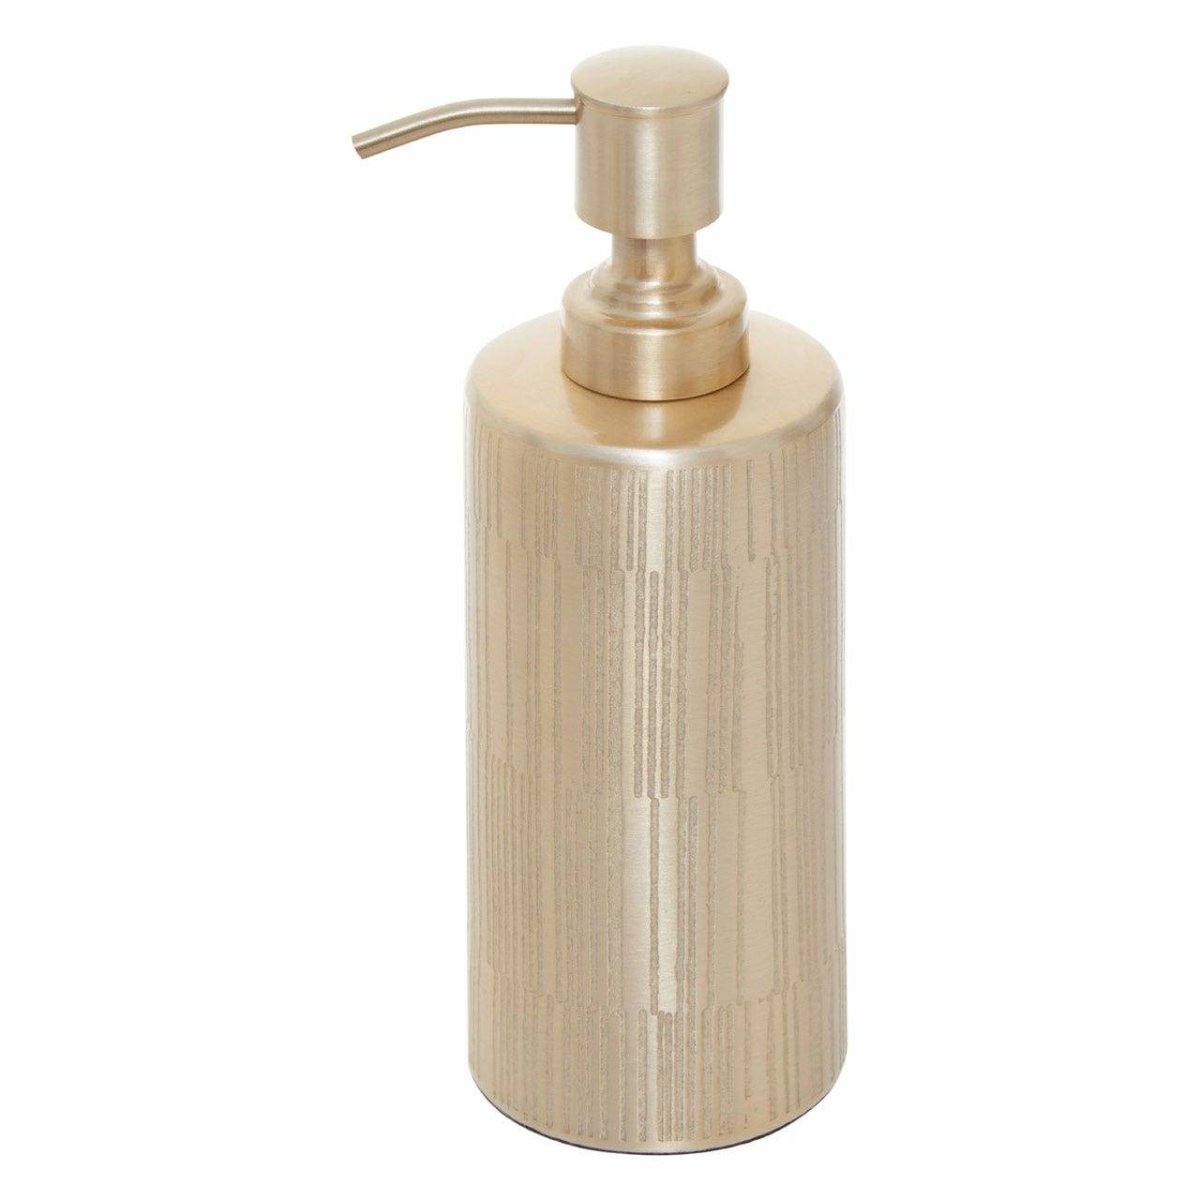 200ml Liquid Soap Dispenser Bathroom - Bonnypack